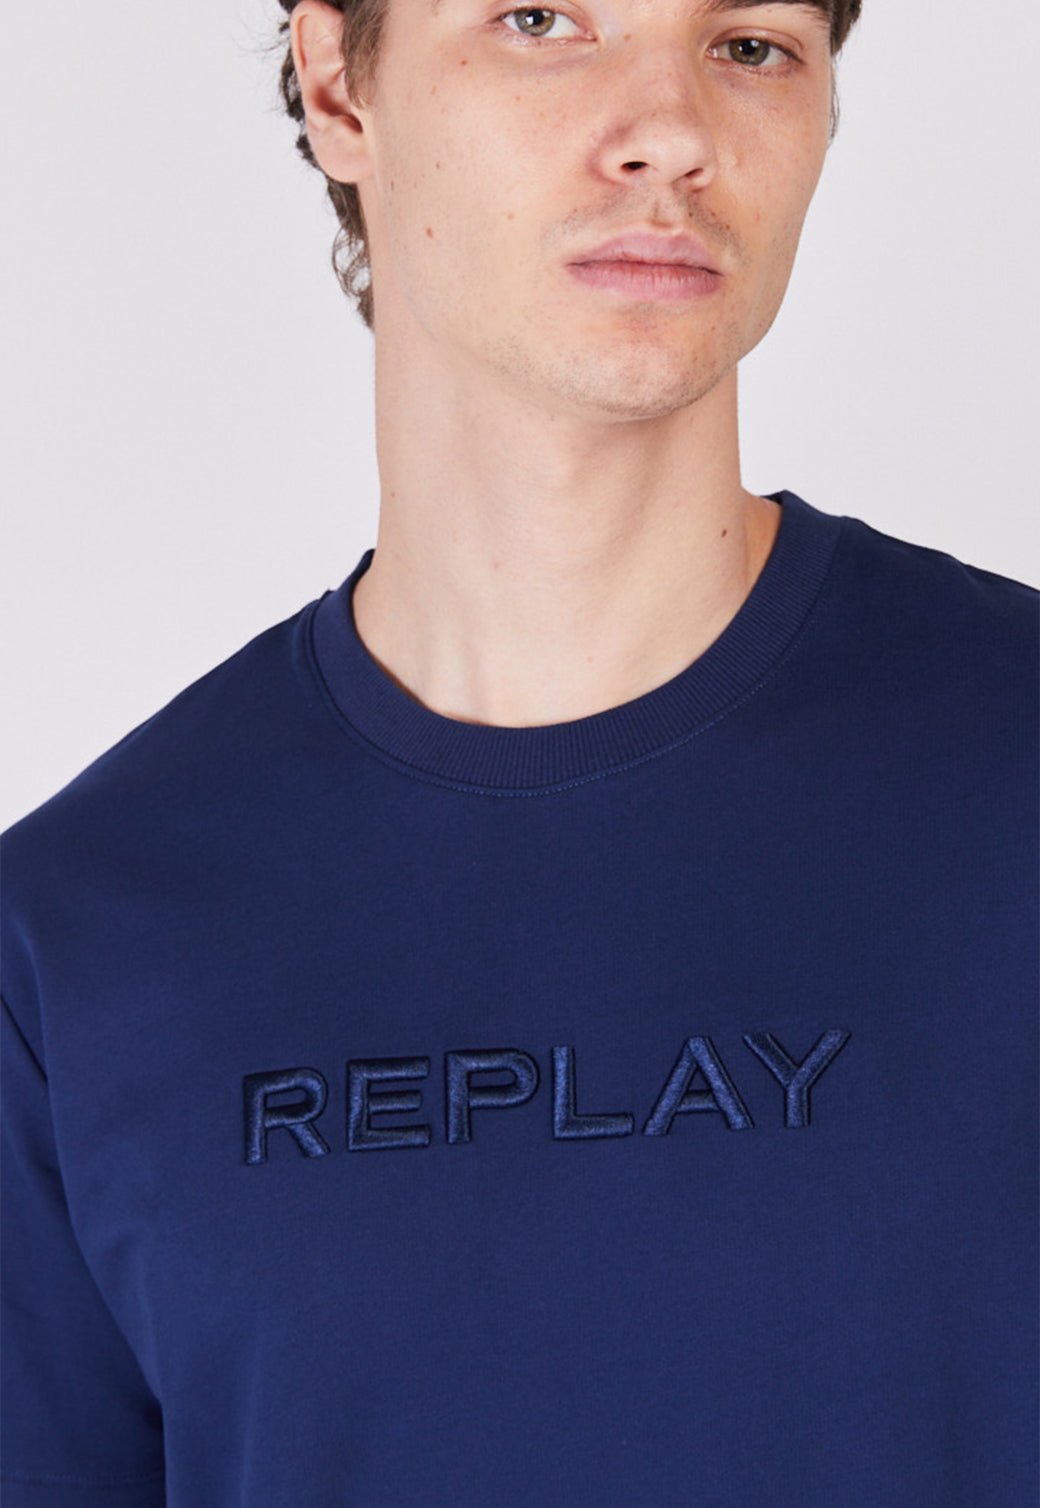 חליפת אופנה ריפליי גבר קצר בצבע כחול - REPLAY